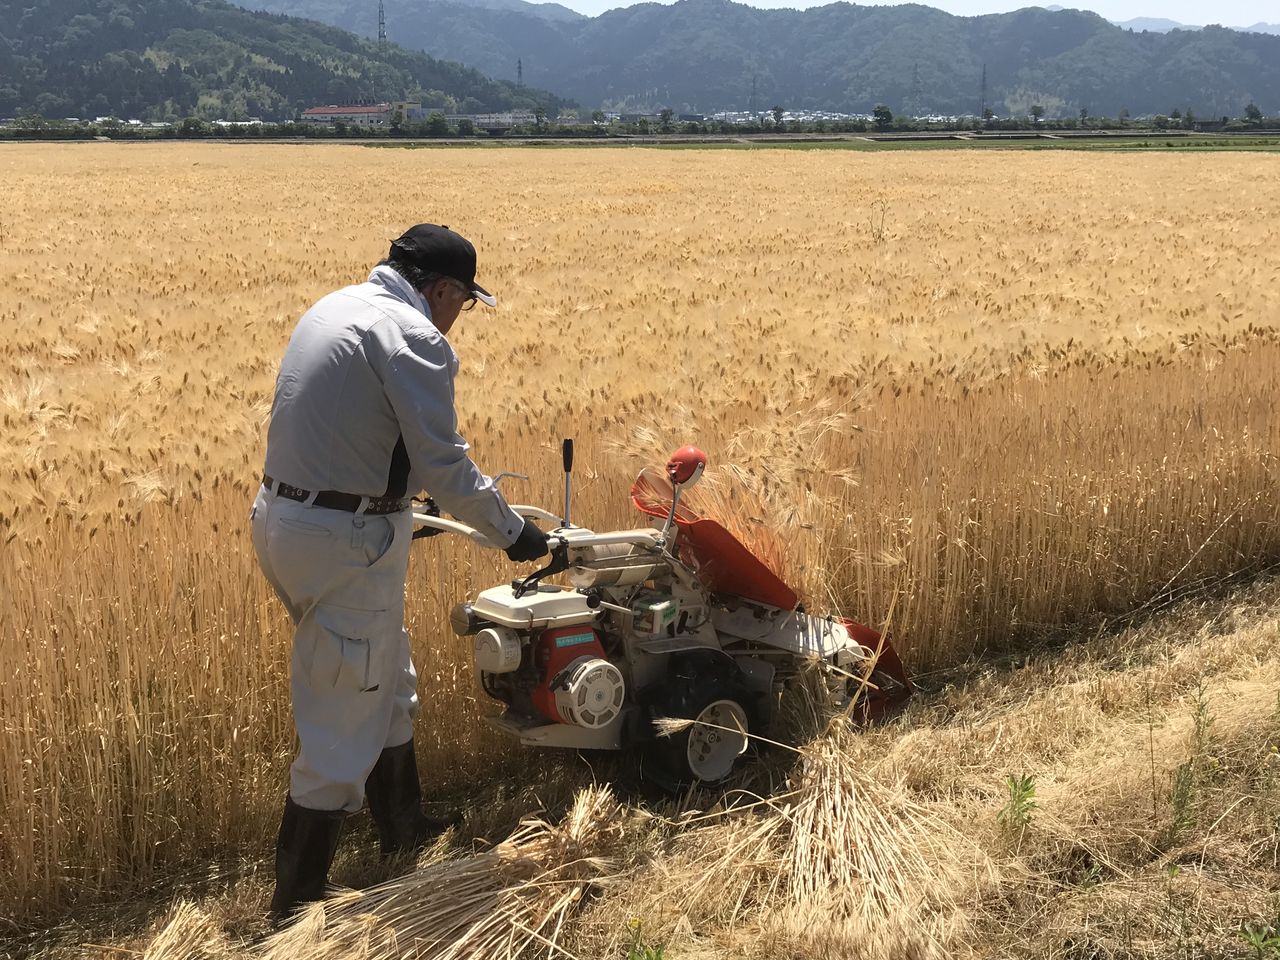 Se cosecha la cebada con una segadora de empuje manual. (Fotografía por cortesía de Shigehisa).